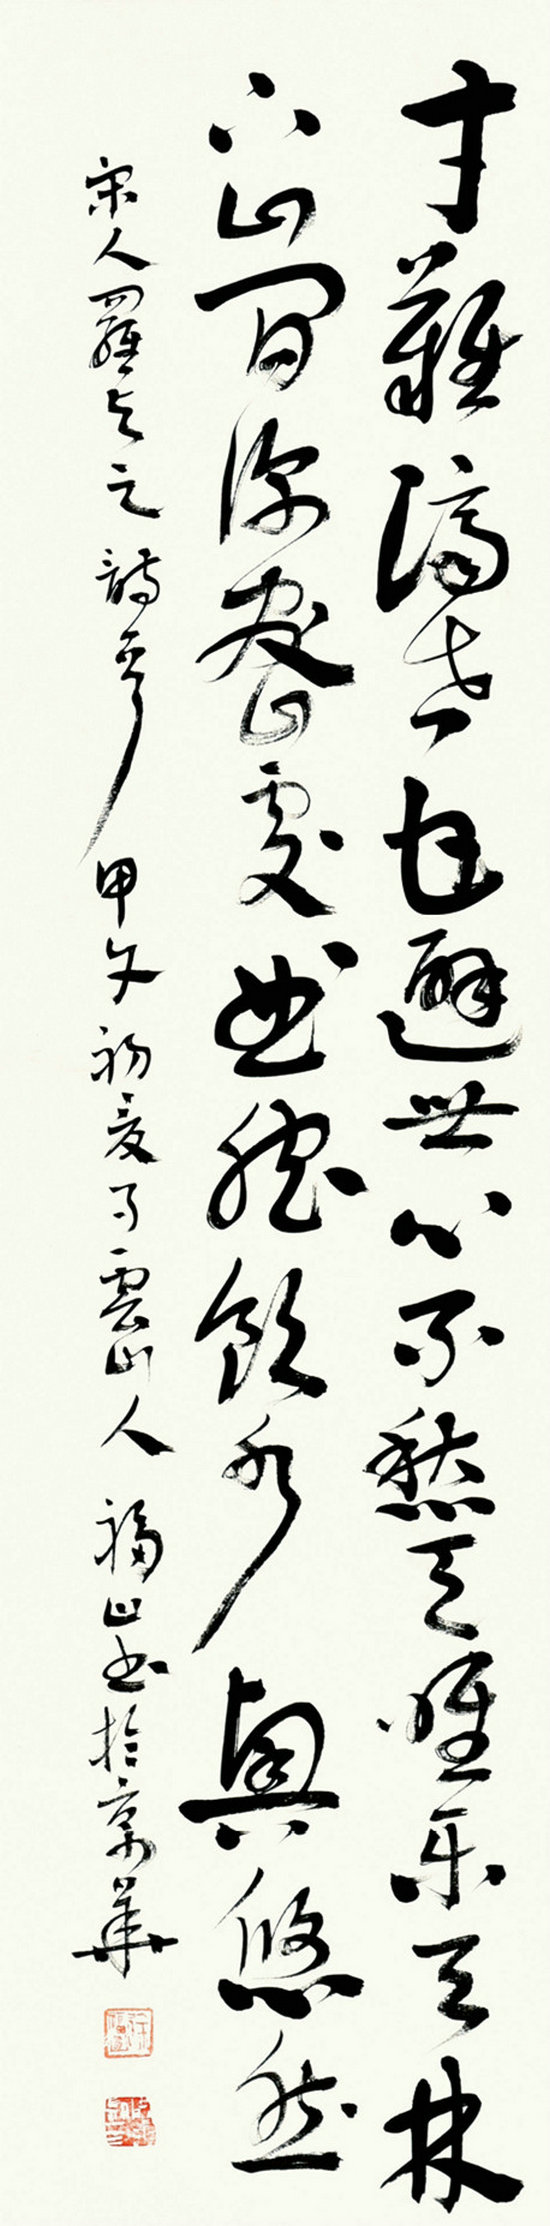 笔墨意象——徐福山书画作品展将在京开幕